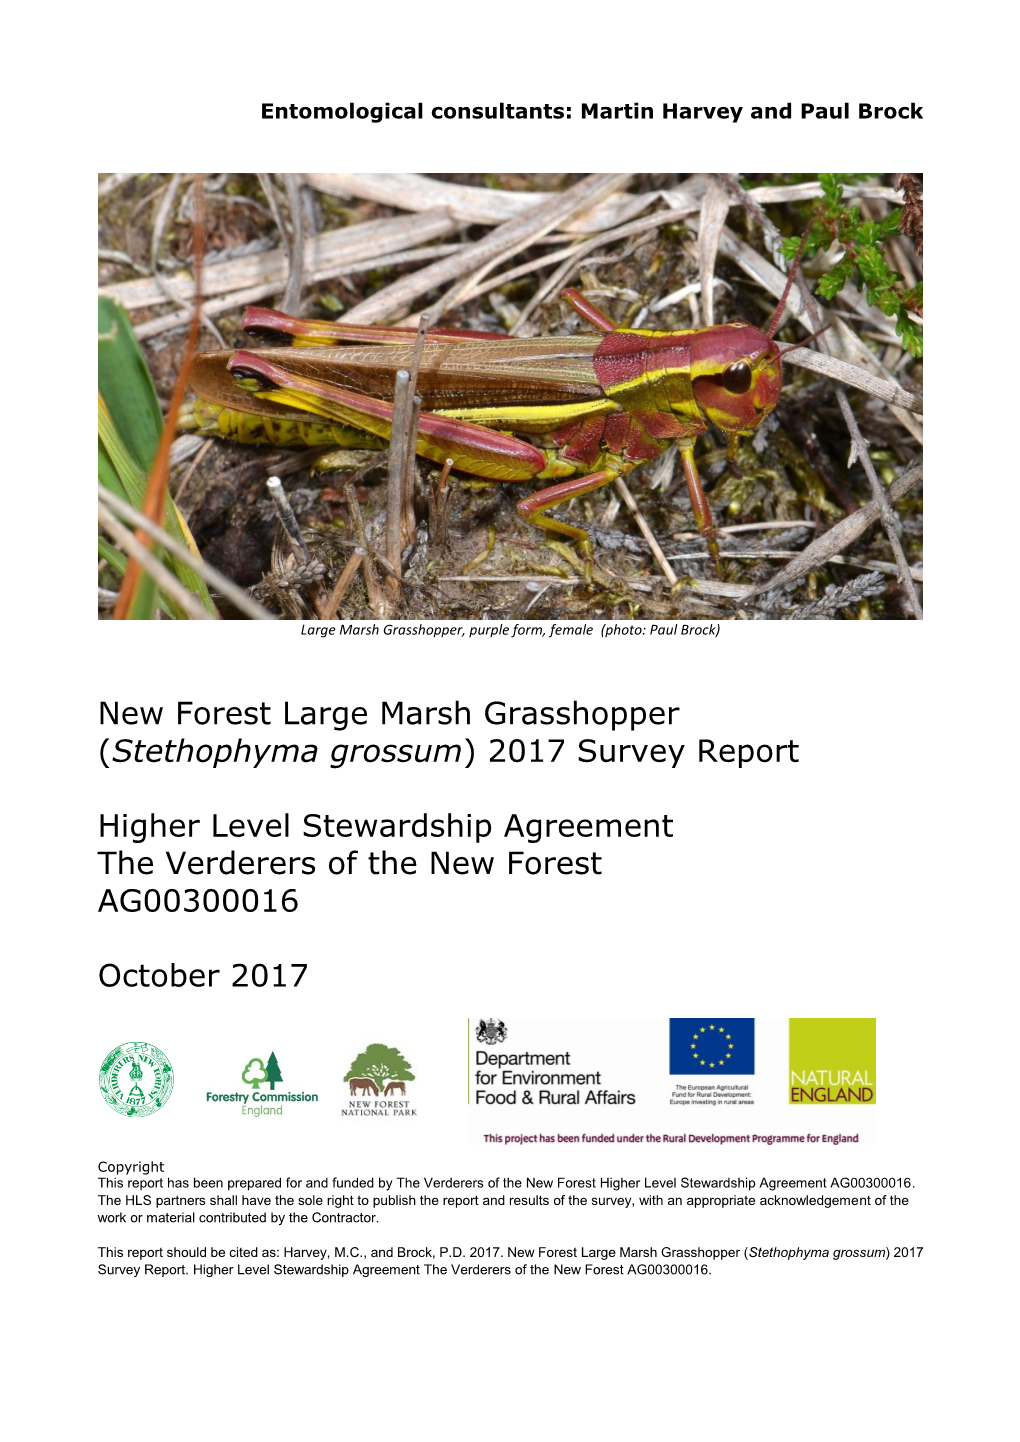 New Forest Large Marsh Grasshopper (Stethophyma Grossum) 2017 Survey Report